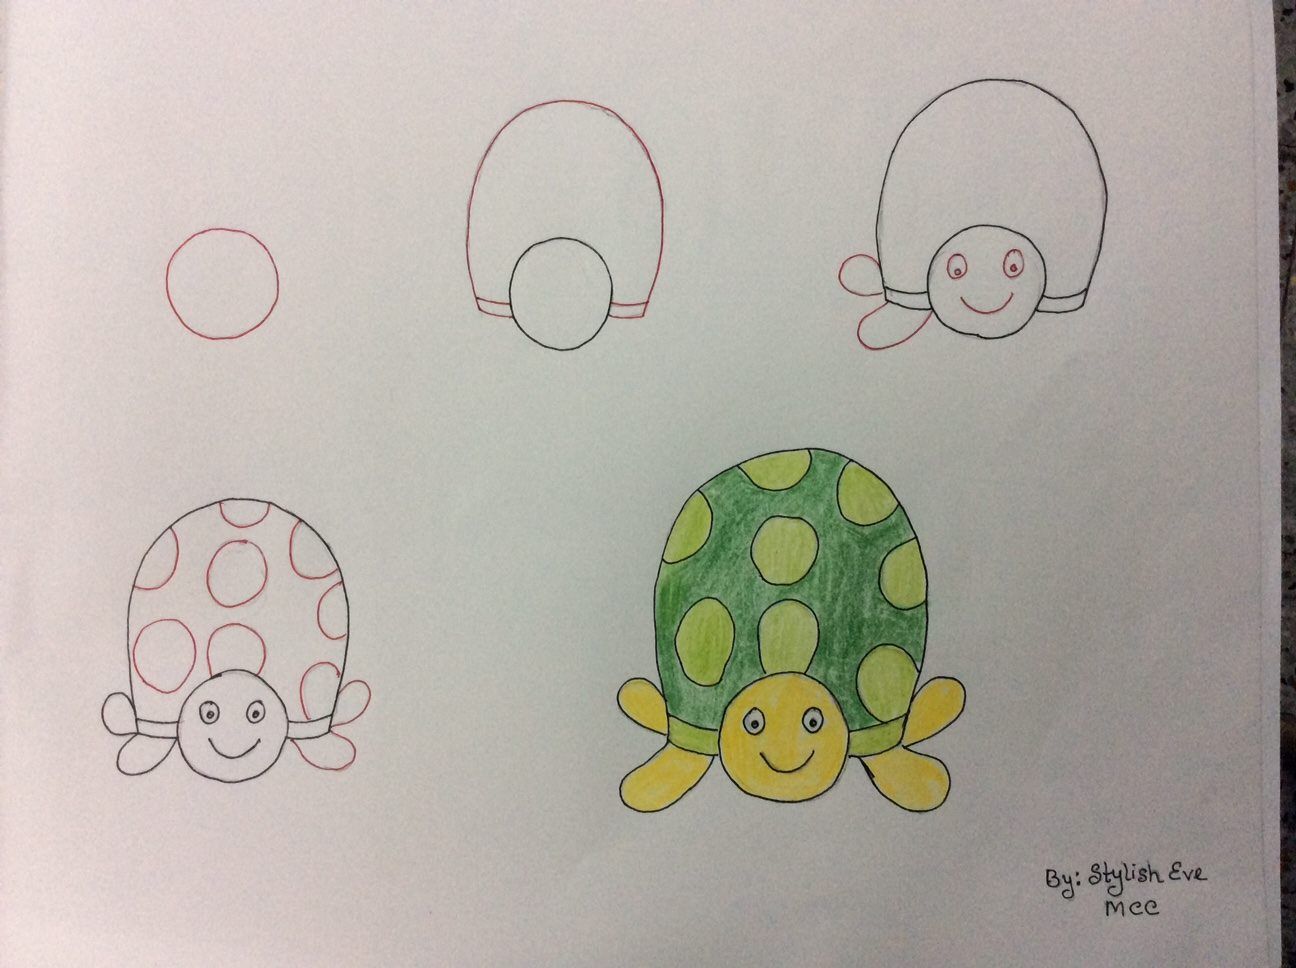 نقاشی ساده از حیوانات برای کودکان
